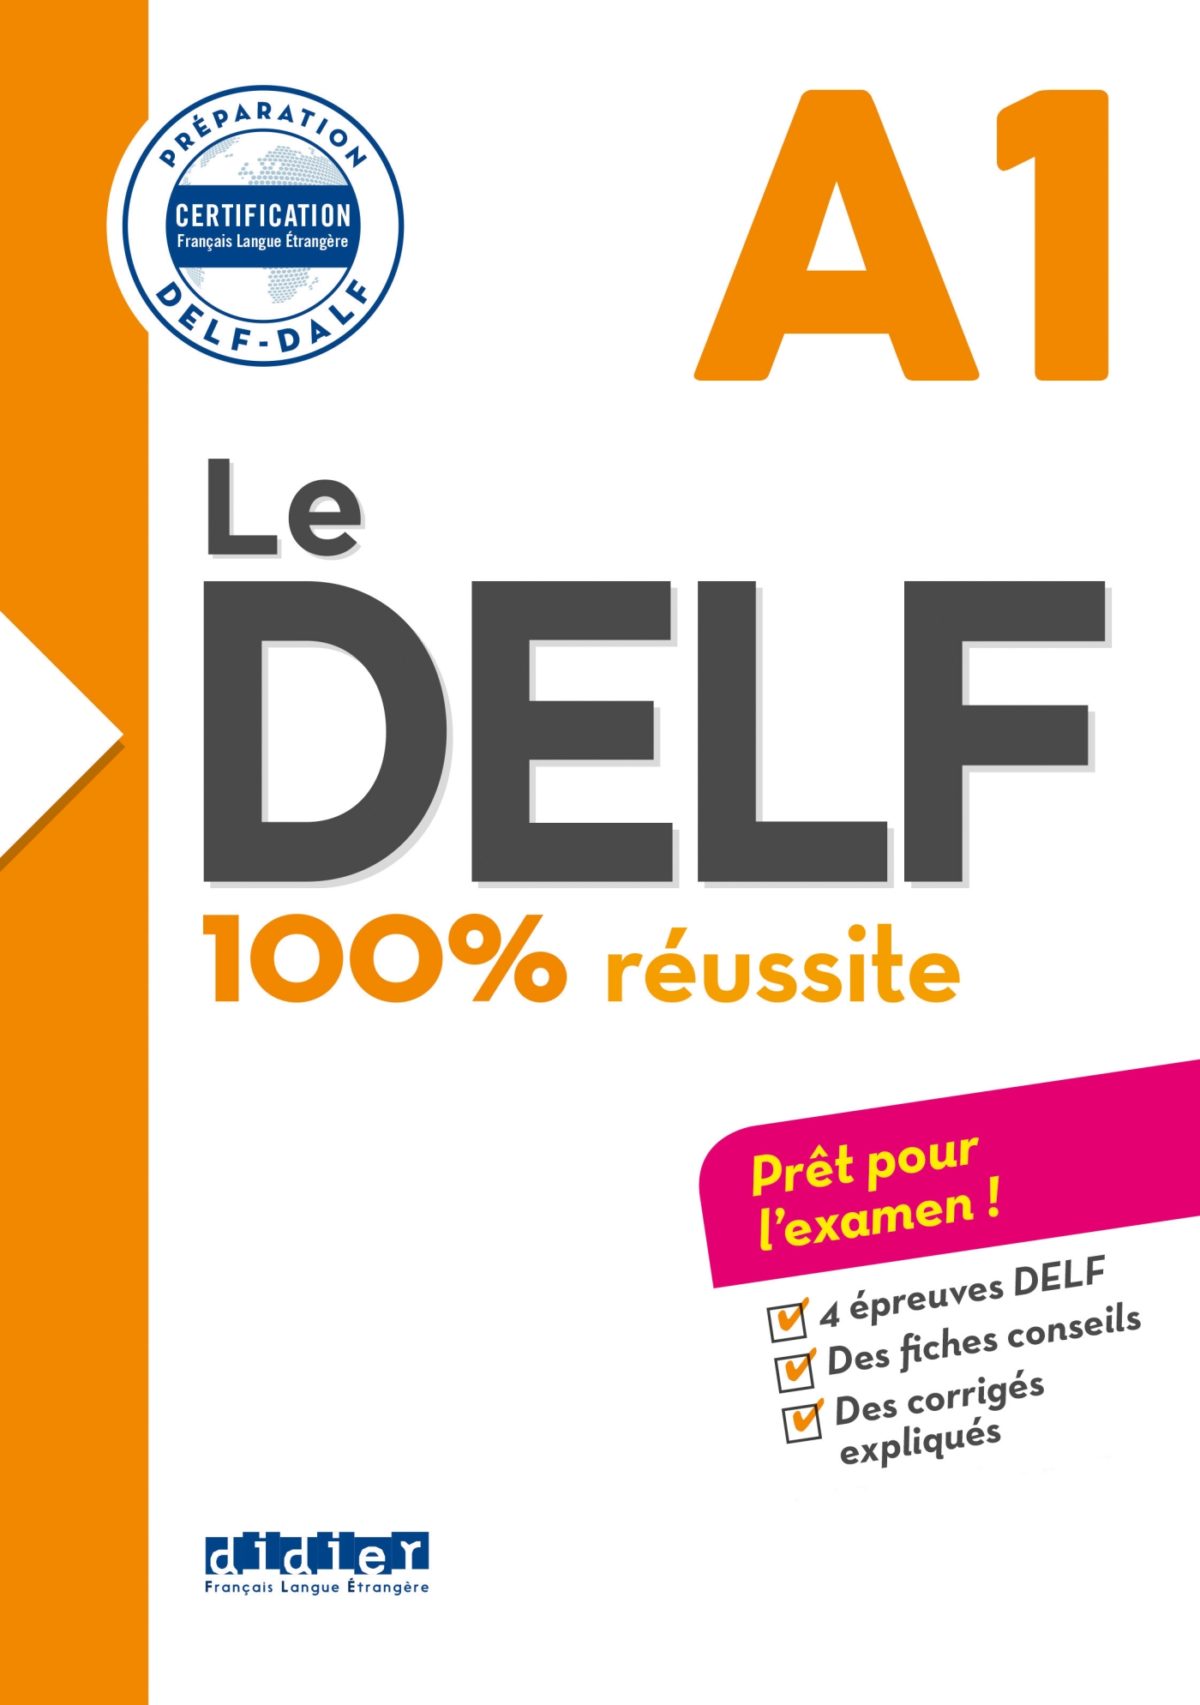 Le DELF – 100% réussite – A1 – Livre – Version numérique epub – Didier FLE